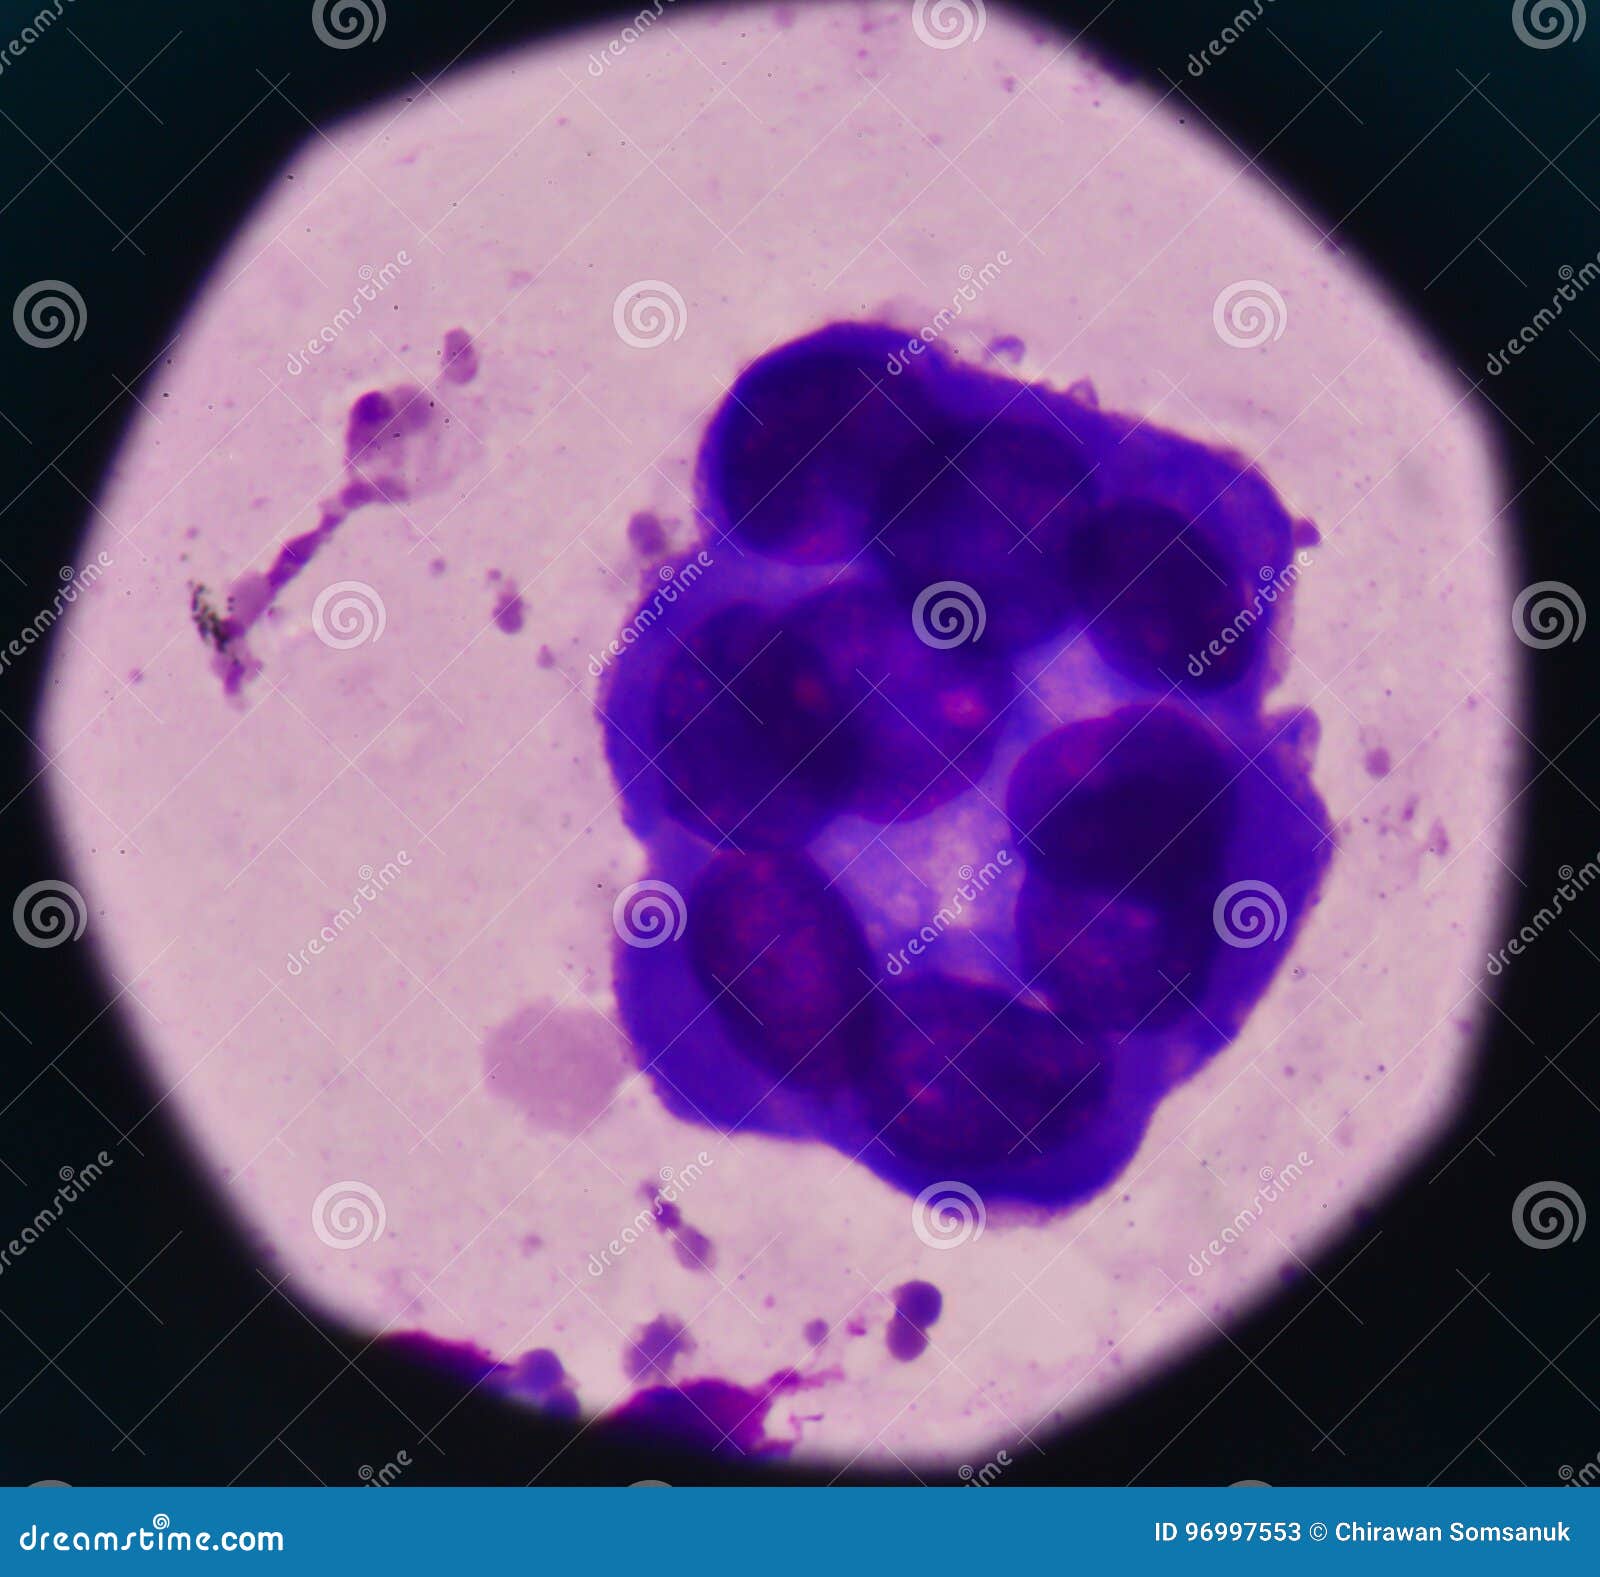 Атипичные клетки в цитологии что это. Мезотелий цитология. Клетки мезотелия. Плазматические клетки в плевральной жидкости. Пролиферация мезотелия.